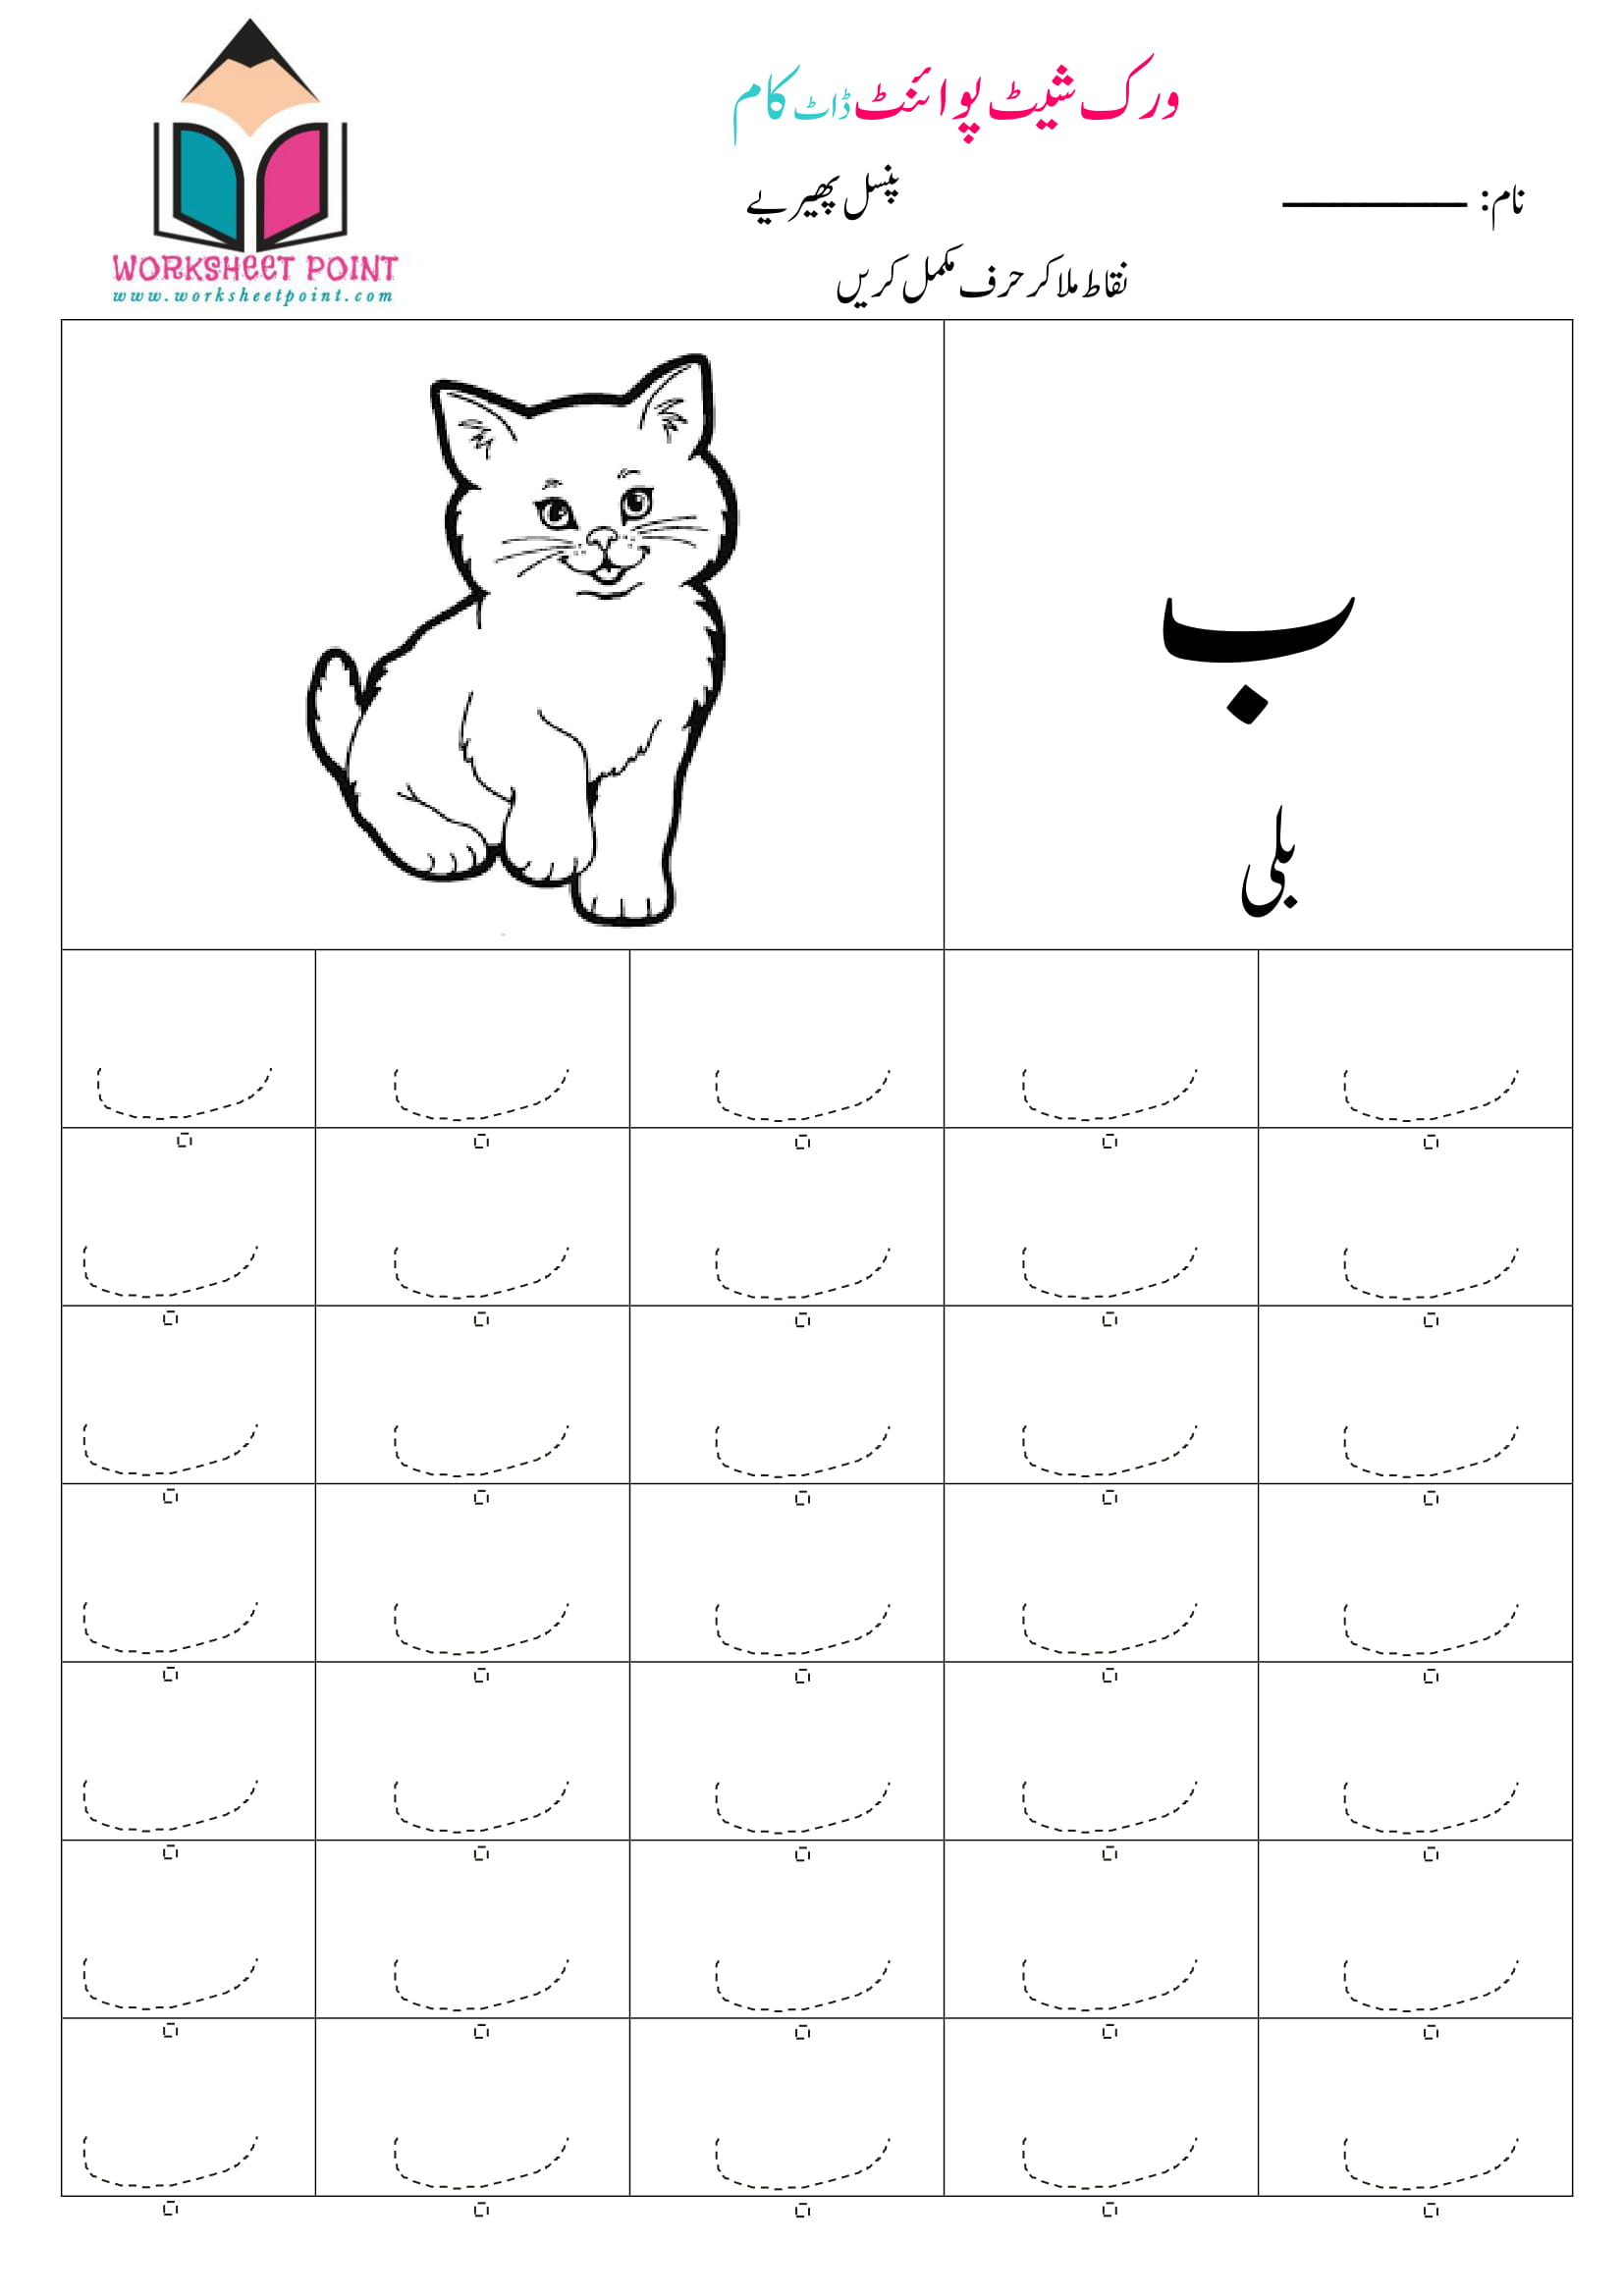 urdu-alphabets-tracing-worksheets-worksheet-point